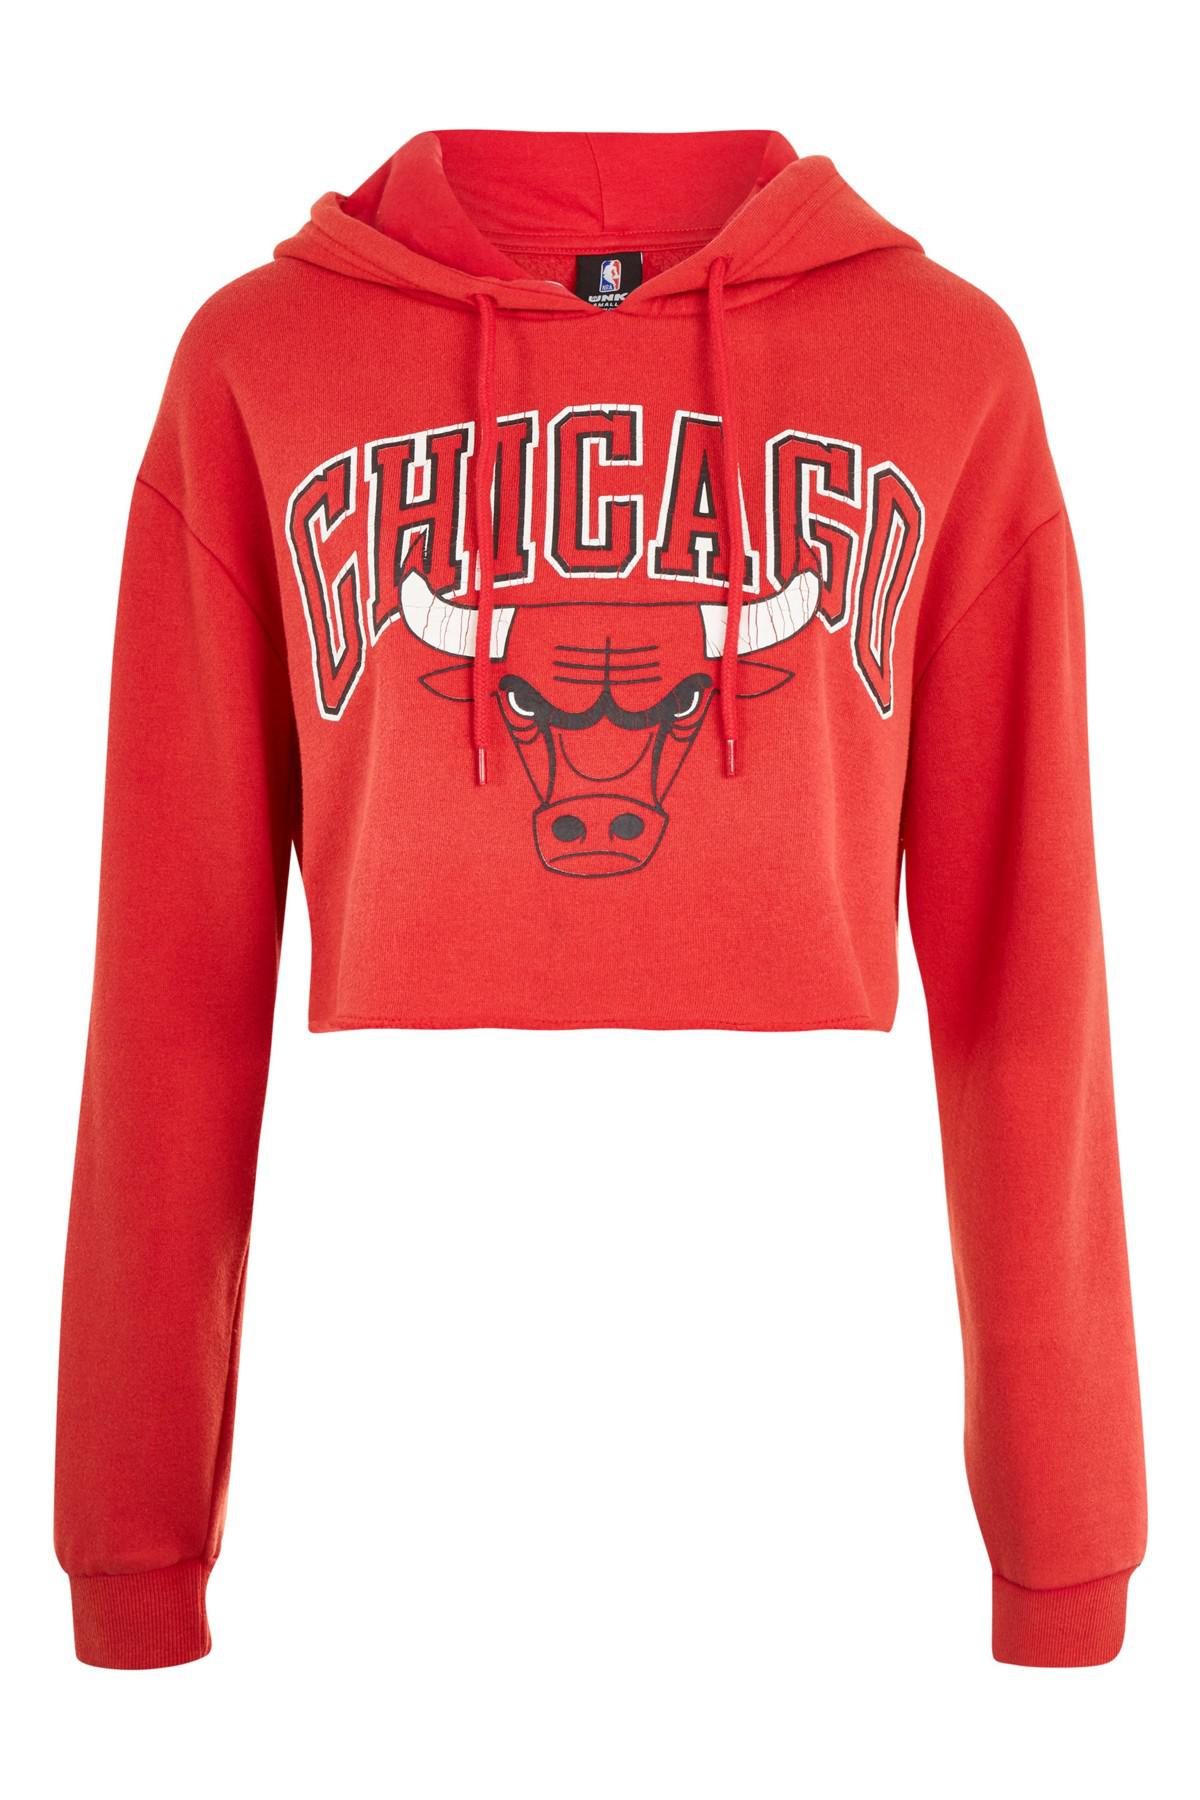 chicago bulls women's crop top